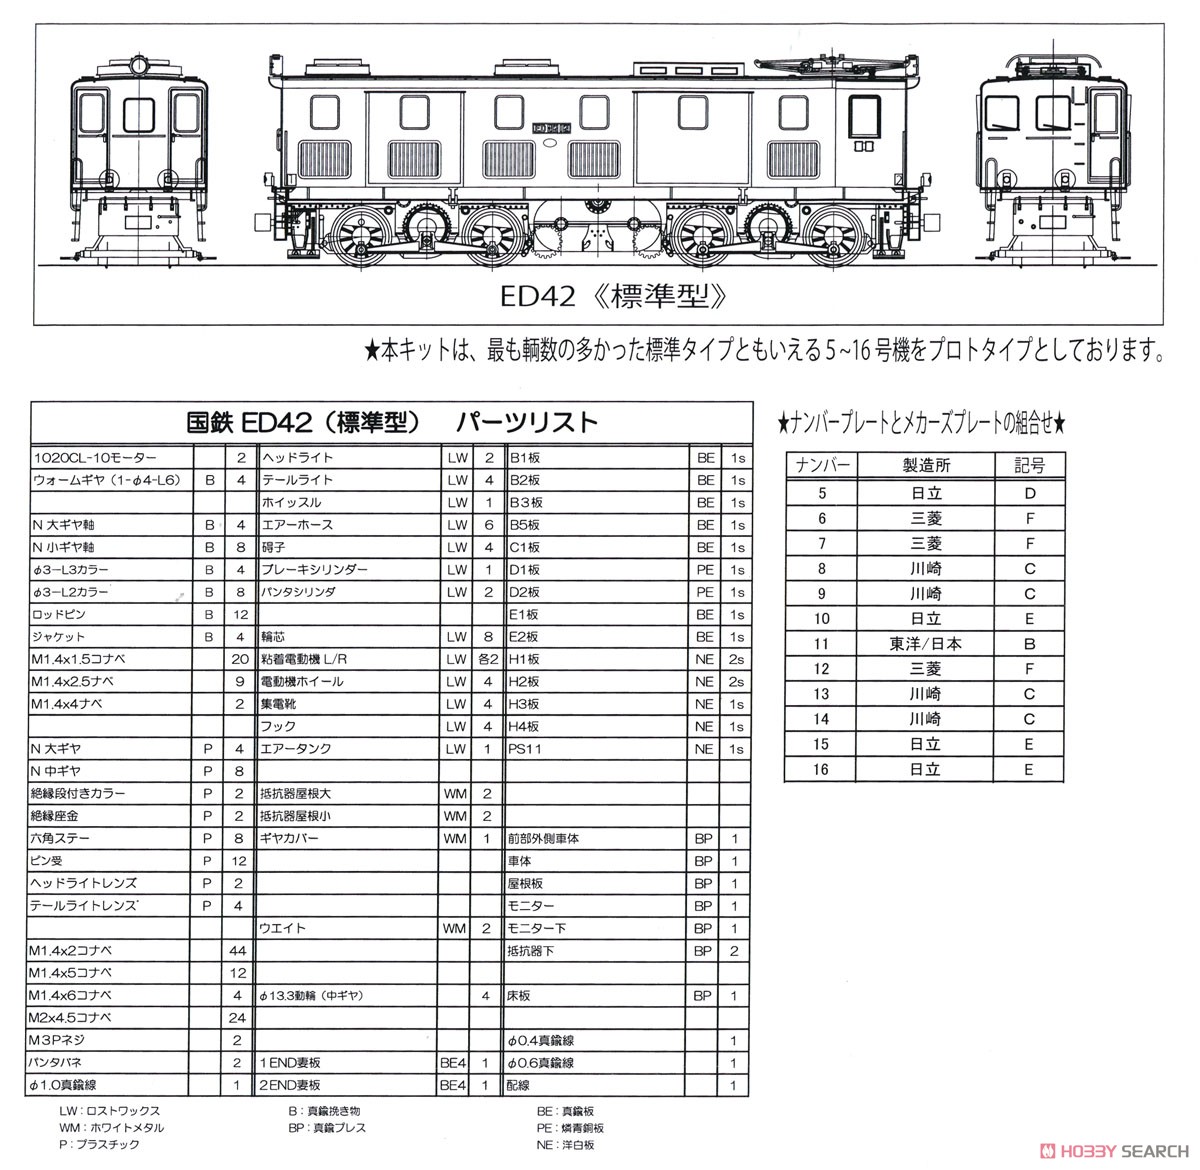 16番(HO) 鉄道省 ED42形 電気機関車 (標準型) 組立キット (組み立てキット) (鉄道模型) 設計図6